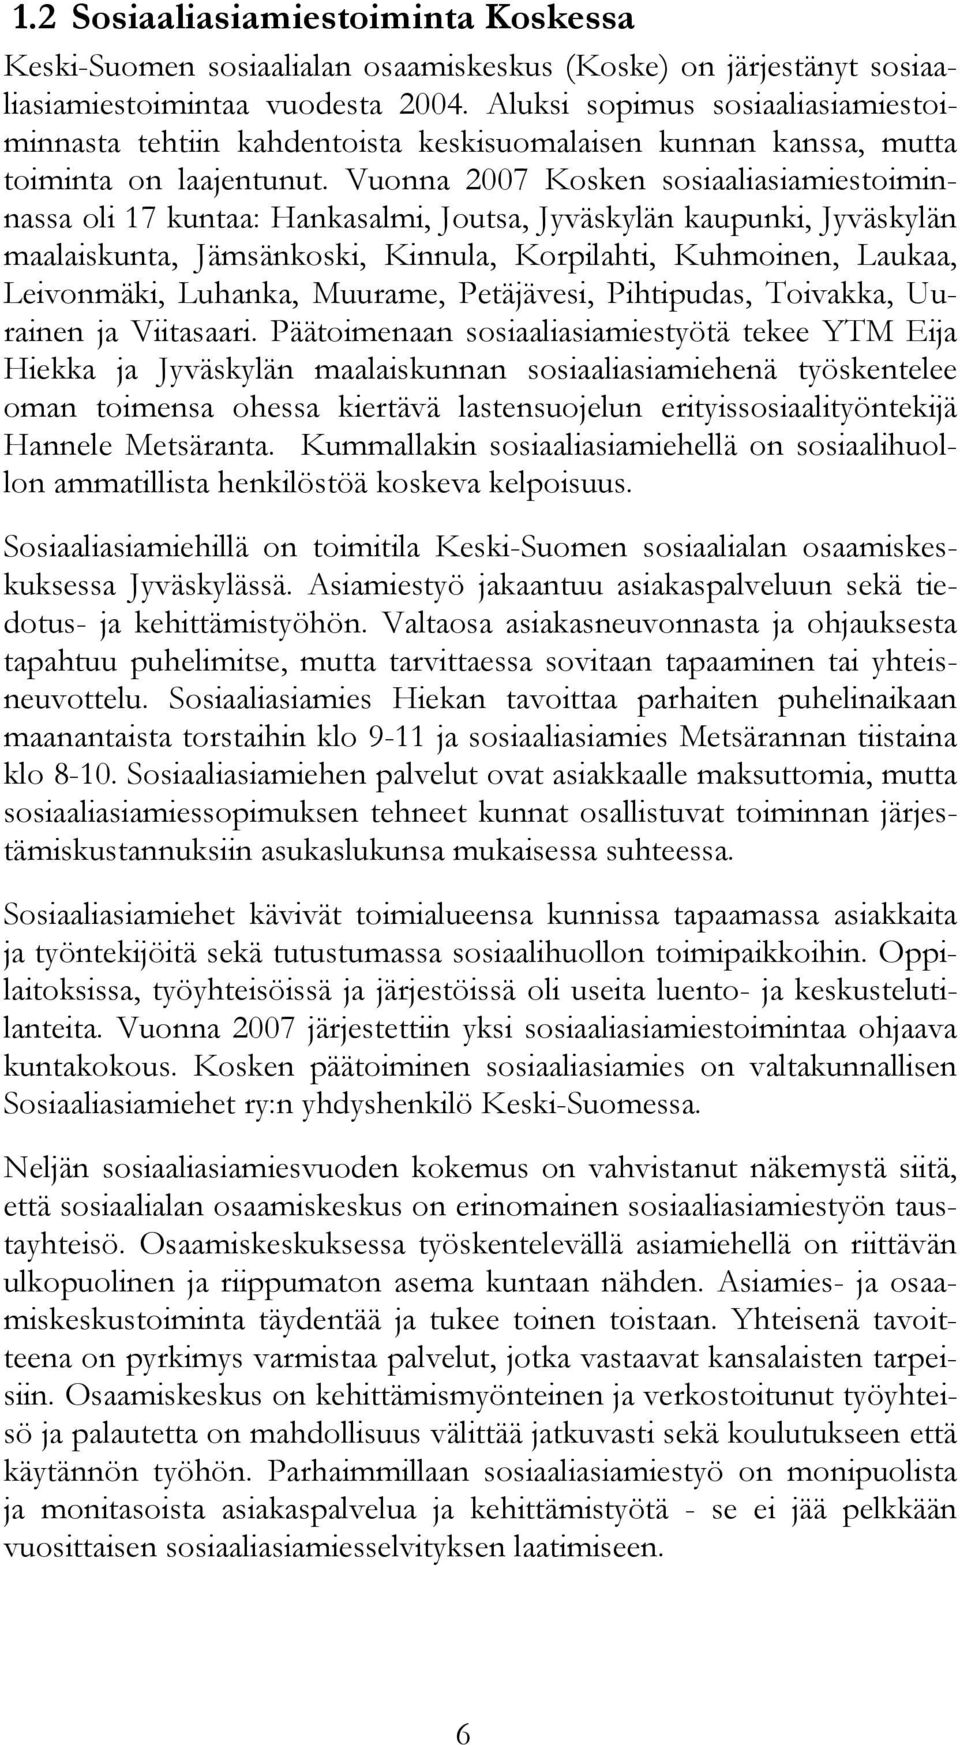 Vuonna 2007 Kosken sosiaaliasiamiestoiminnassa oli 17 kuntaa: Hankasalmi, Joutsa, Jyväskylän kaupunki, Jyväskylän maalaiskunta, Jämsänkoski, Kinnula, Korpilahti, Kuhmoinen, Laukaa, Leivonmäki,